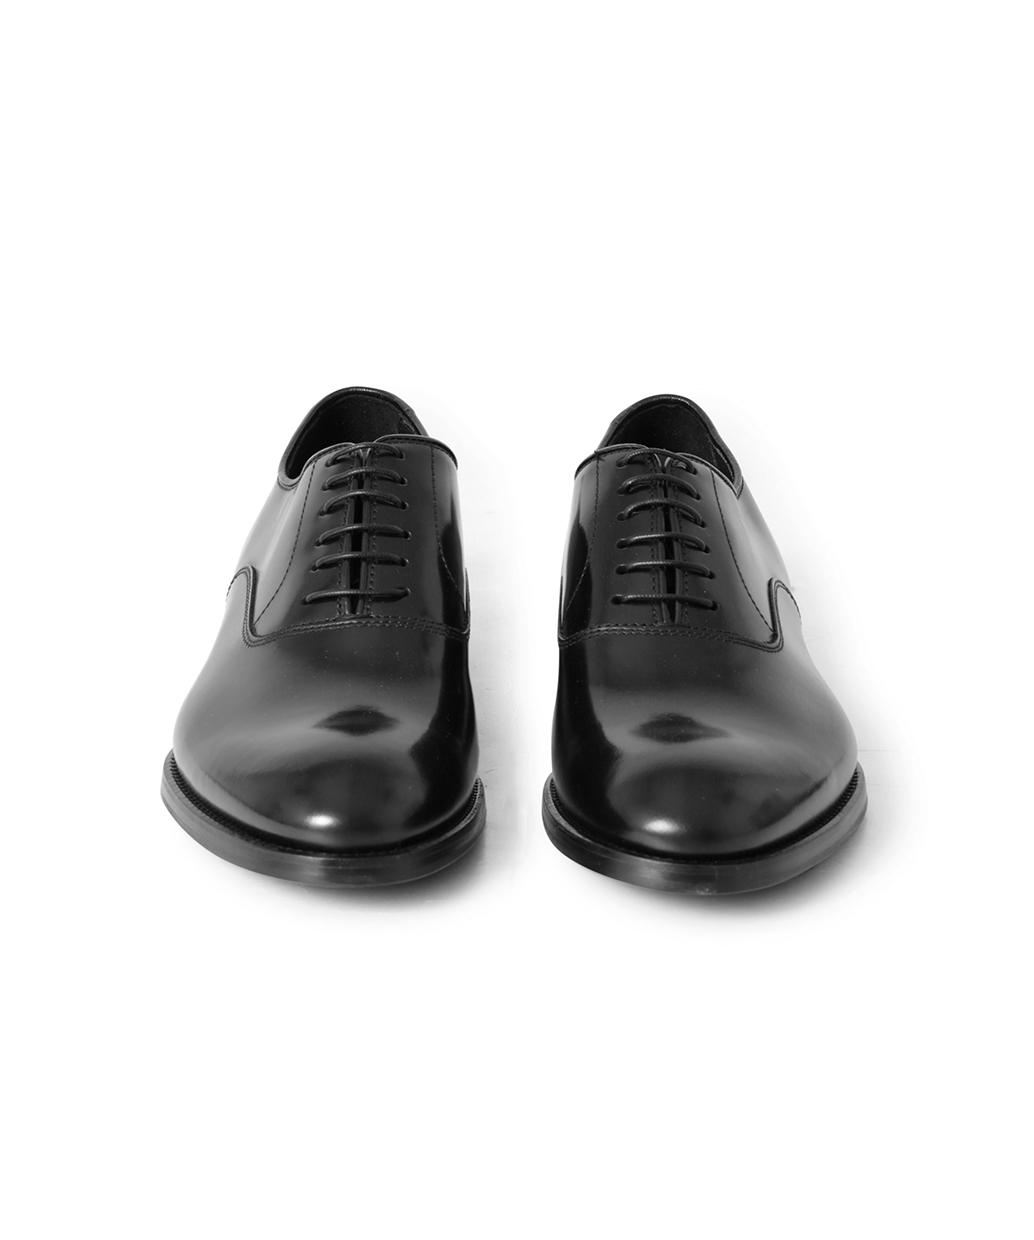 デュカルス／DOUCAL'S シューズ ビジネスシューズ 靴 ビジネス メンズ 男性 男性用レザー 革 本革 ブラック 黒  2053 ダブルモンクストラップ ストレートチップデュカルスDOUCAL